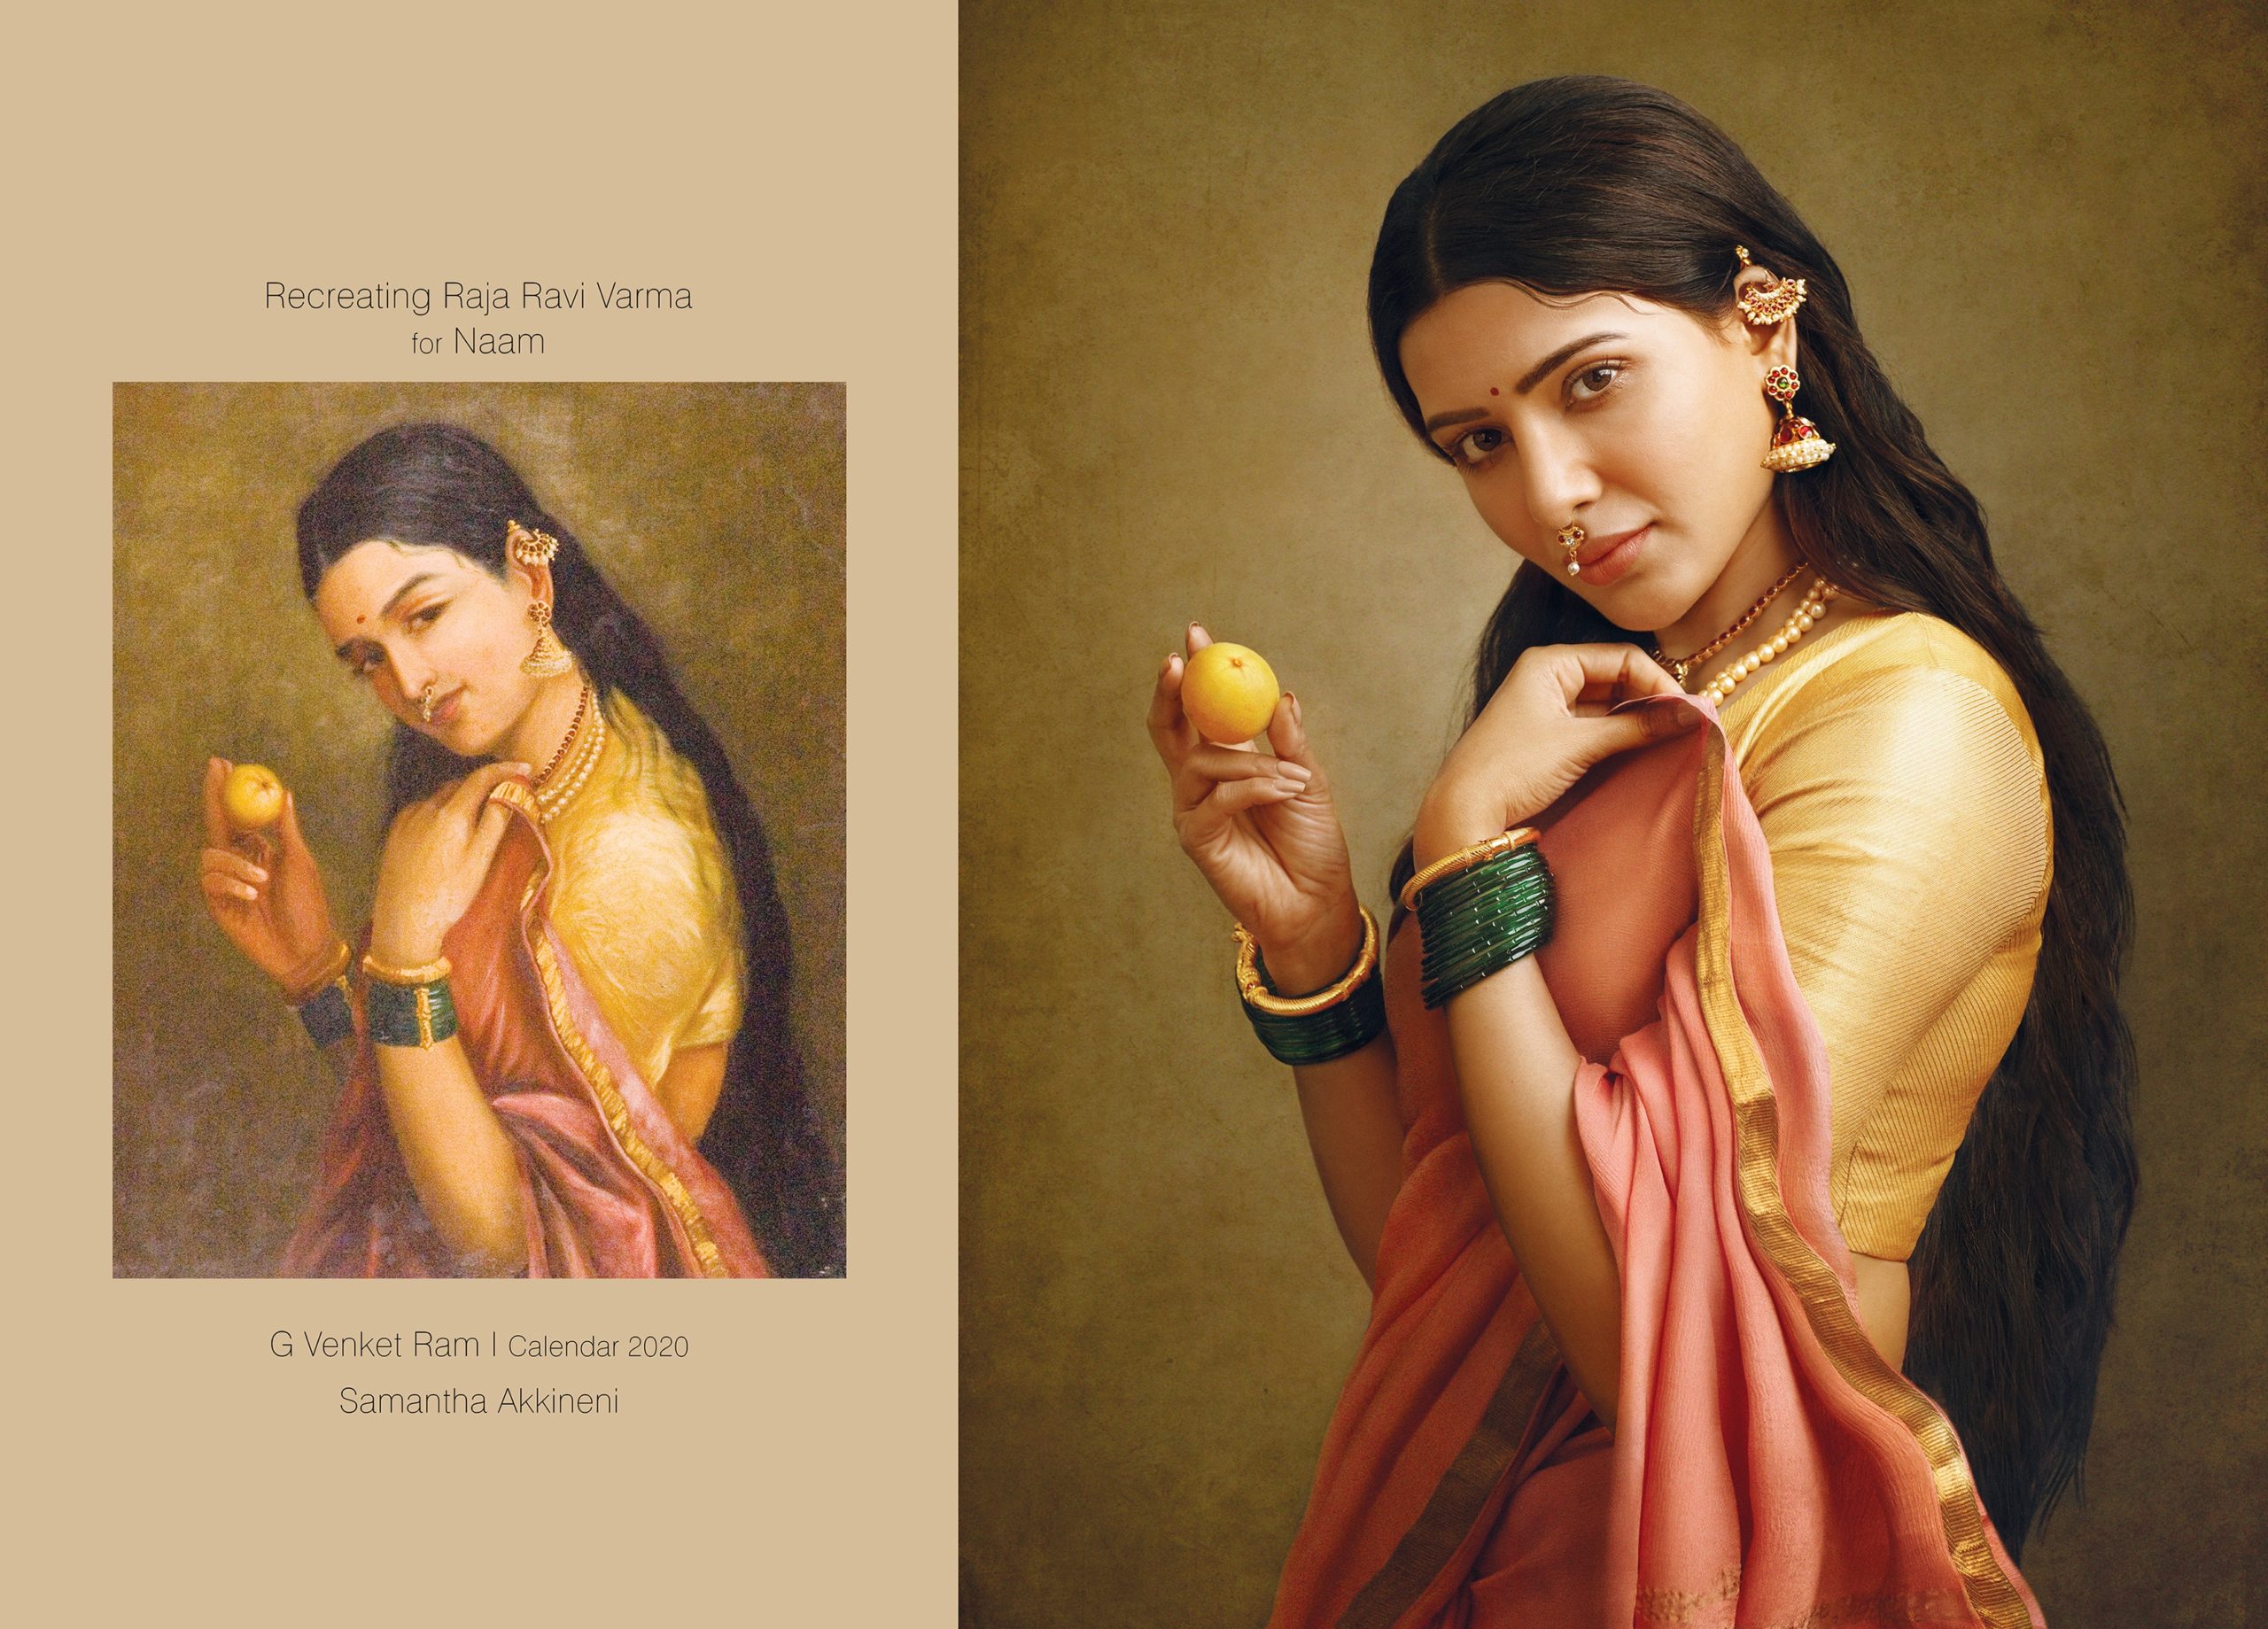 Samantha Akkineni portrait Raja Ravi Varma’s painting